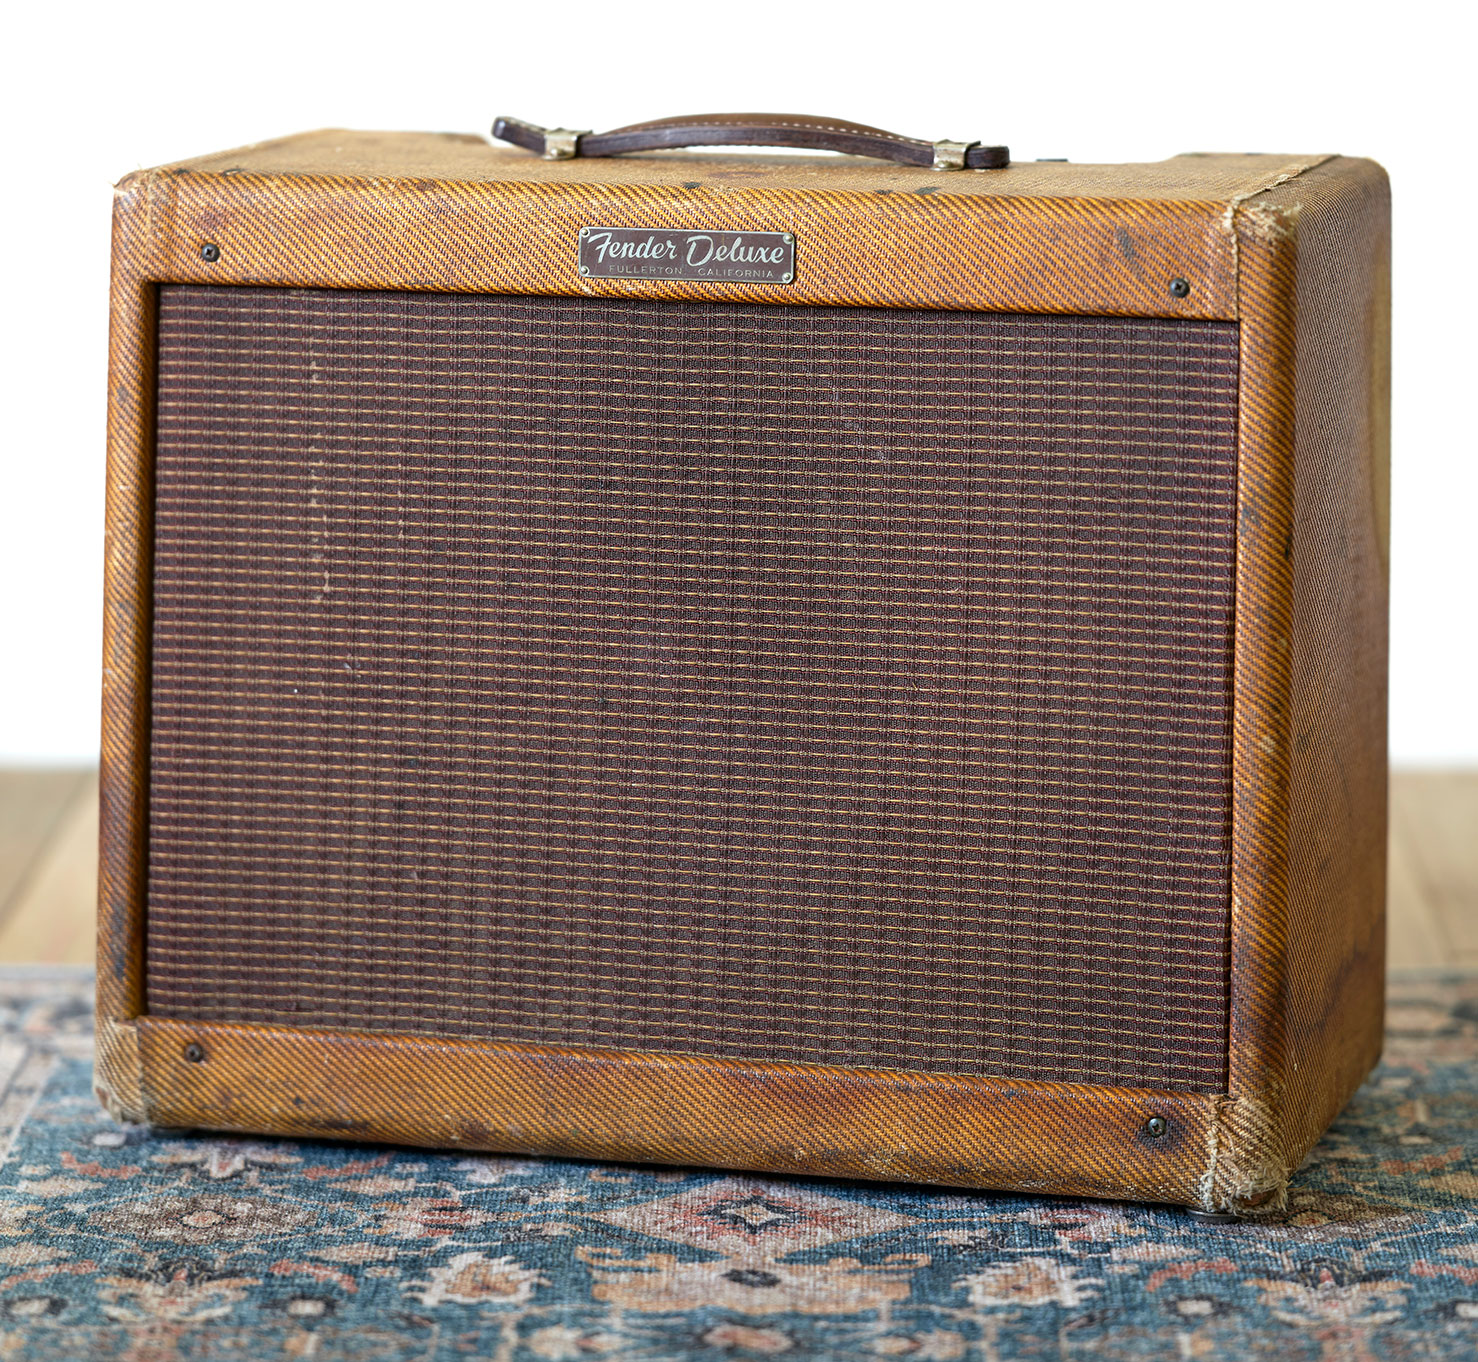 Vintage Tweed Fender Deluxe